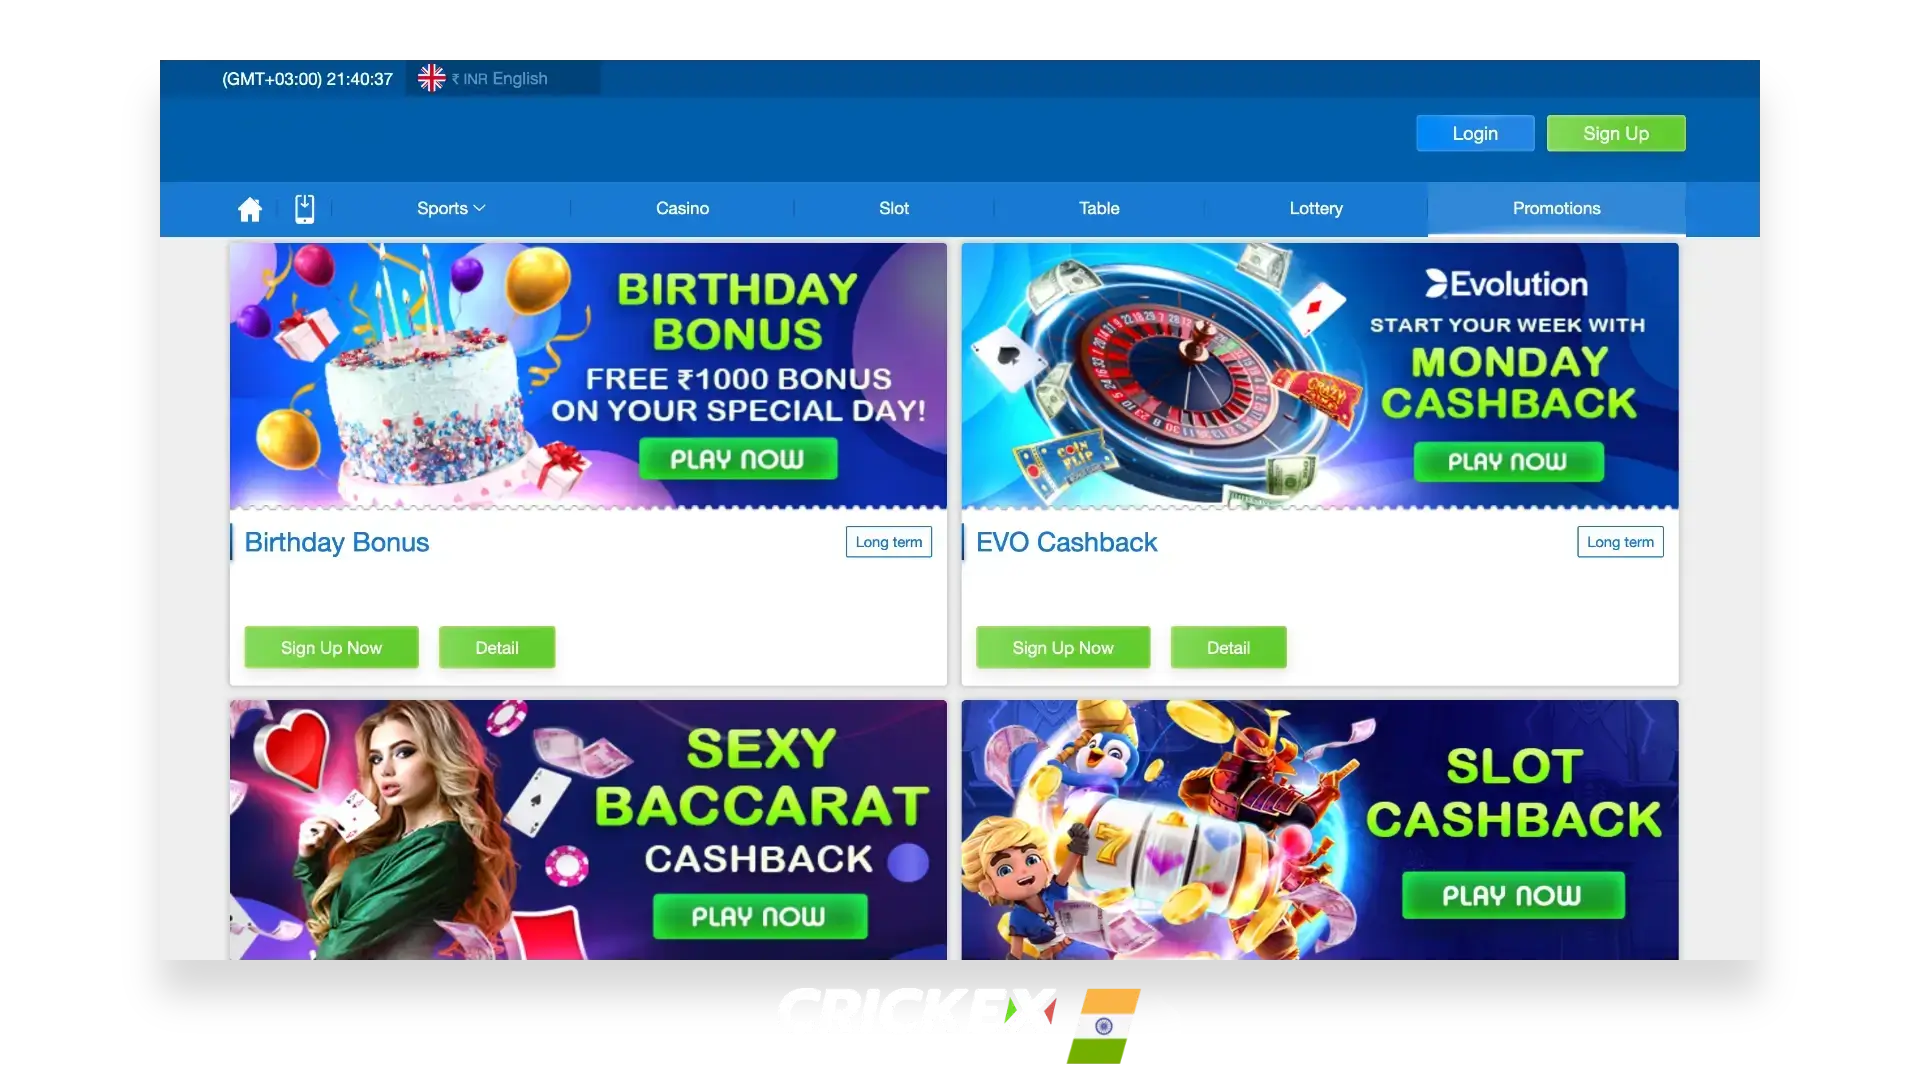 Crickex India के ग्राहकों के लिए उपलब्ध वर्तमान बोनस और प्रचारों के बारे में विस्तृत जानकारी